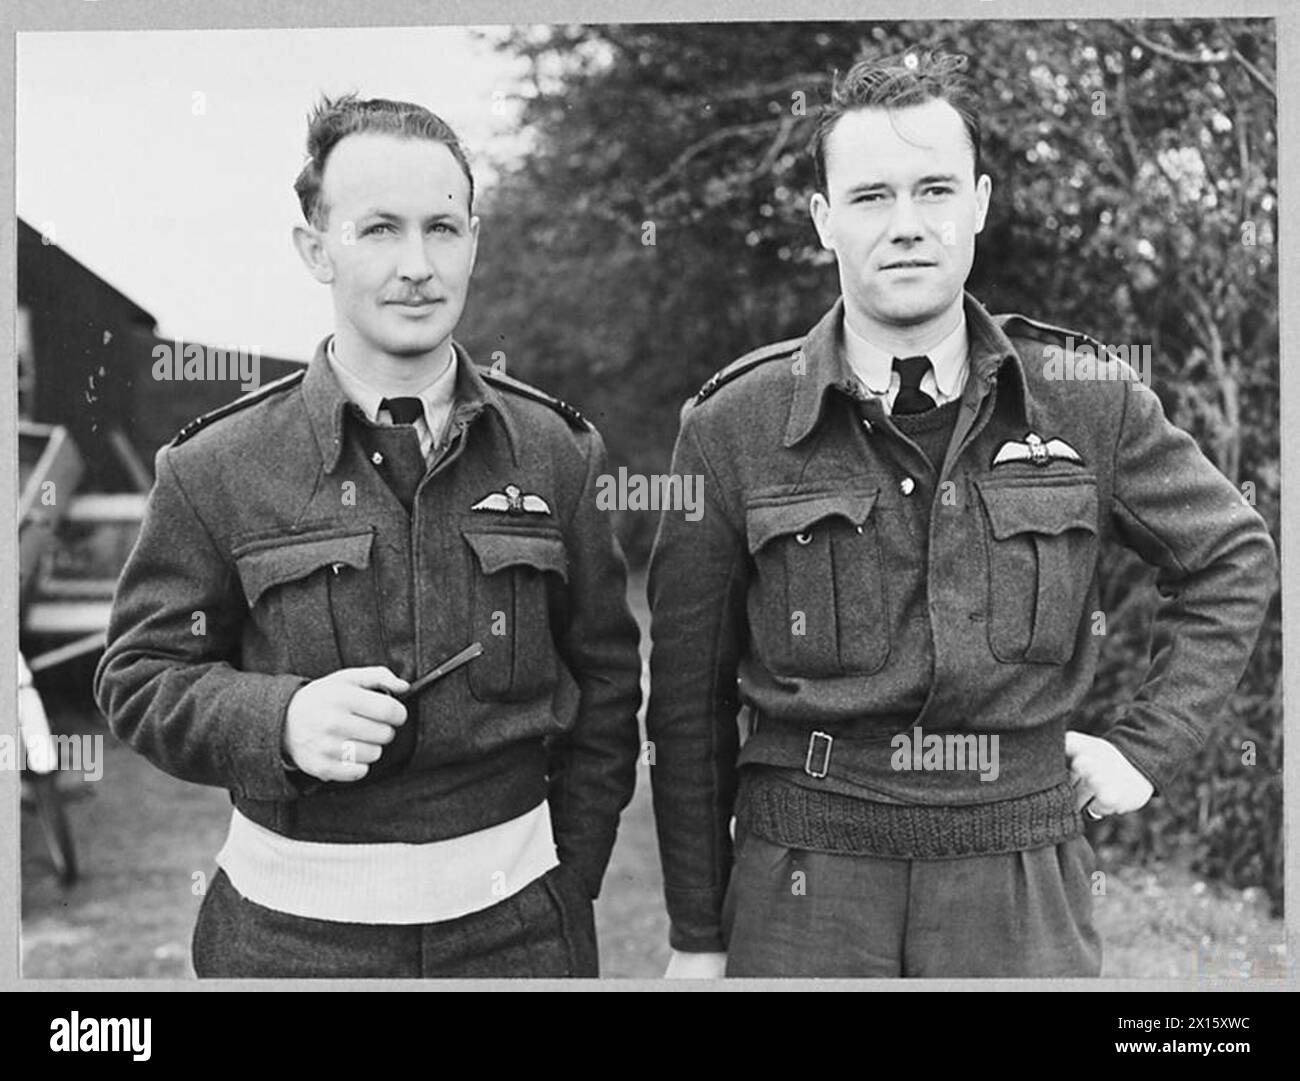 PILOTES DE CHASSE ACE DE LA R.A.F. - pilotes de chasse Ace de la R.A.F. opérant à partir d'une station en Grande-Bretagne - des hommes qui gardent le ciel au-dessus de la Grande-Bretagne une «zone de danger» pour les avions ennemis et qui démontrent au-dessus de l'Europe occupée la puissance du chasseur comme une arme offensive. (Photo publiée en 1943). Deux des pilotes de chasse ACE de la RAF - de gauche à droite - Flight Lieutenant E.P. Wood, Flight Lieutenant R.A. Buckam Royal Air Force Banque D'Images